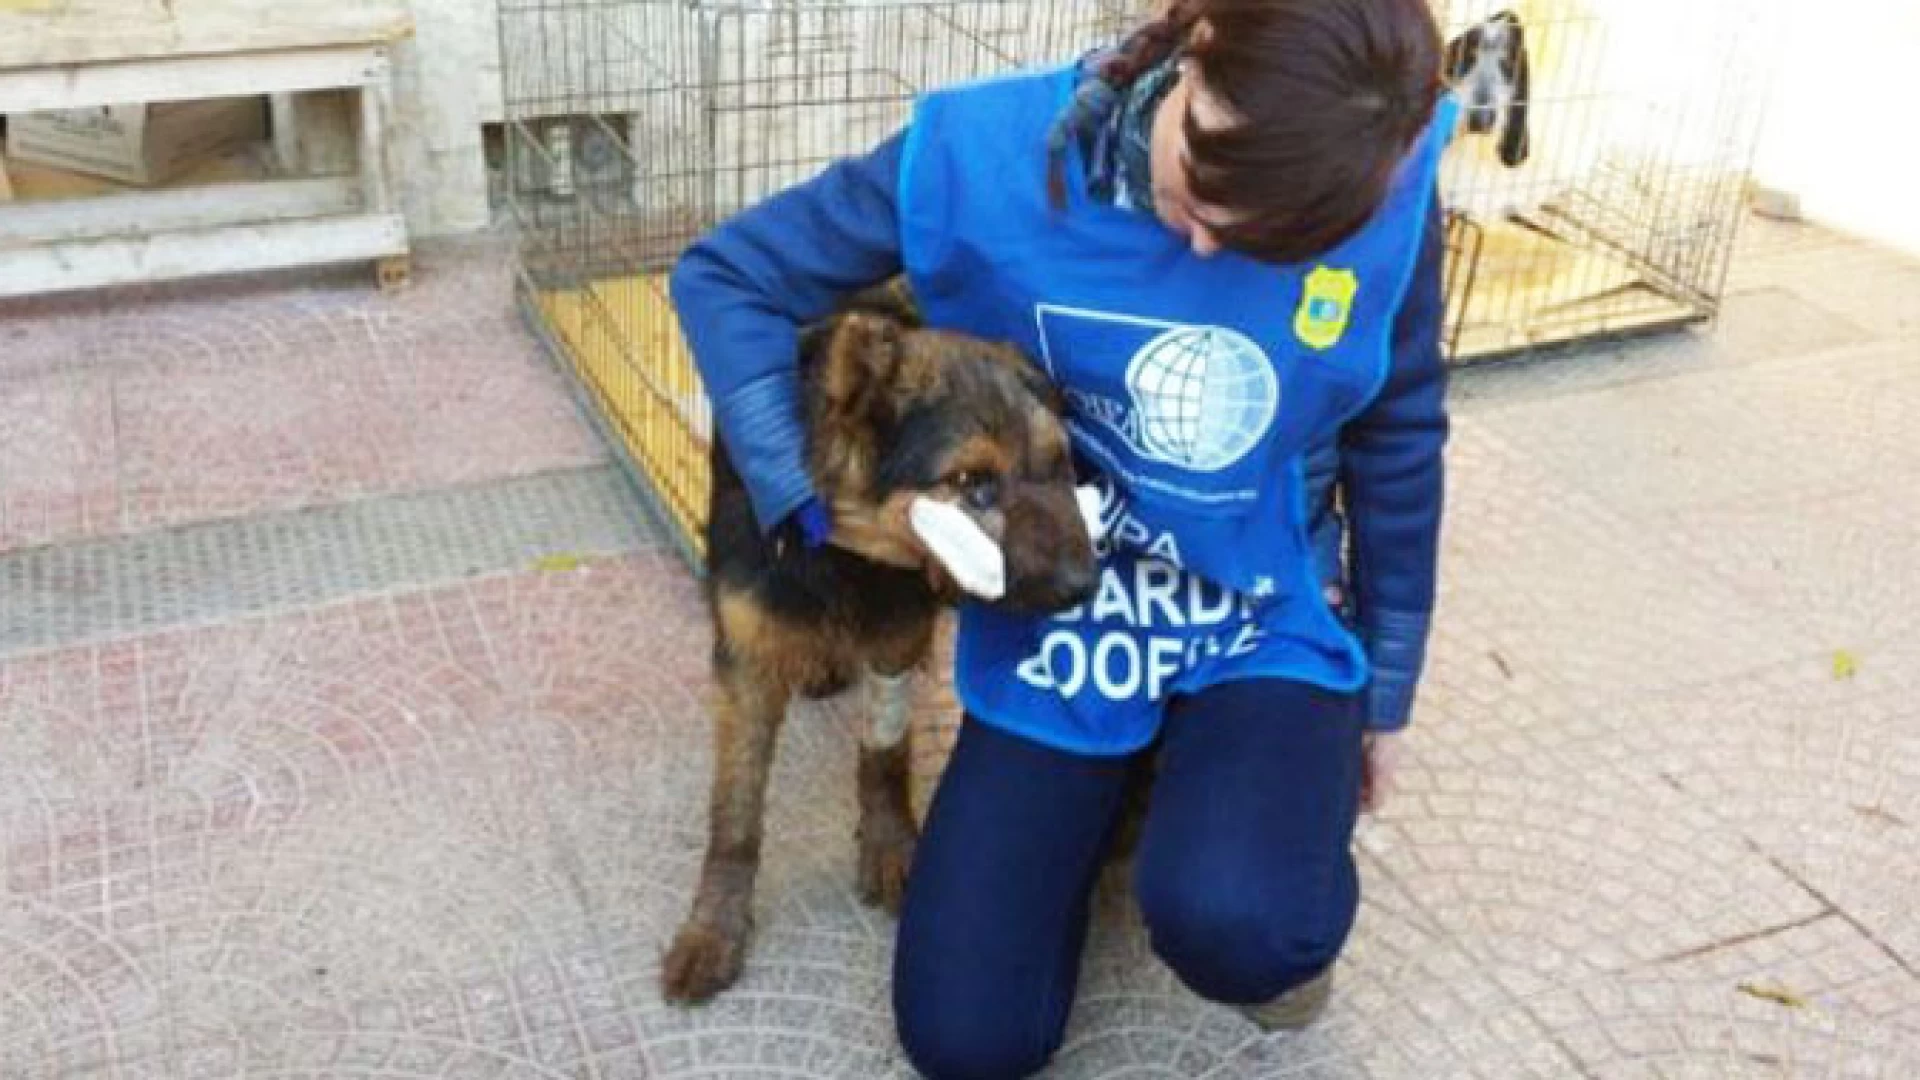 Vairano Patenora: si è salvato il cane seviziato nei giorni scorsi a colpi di roncola. I volontari lo hanno chiamato “Miracolo”.